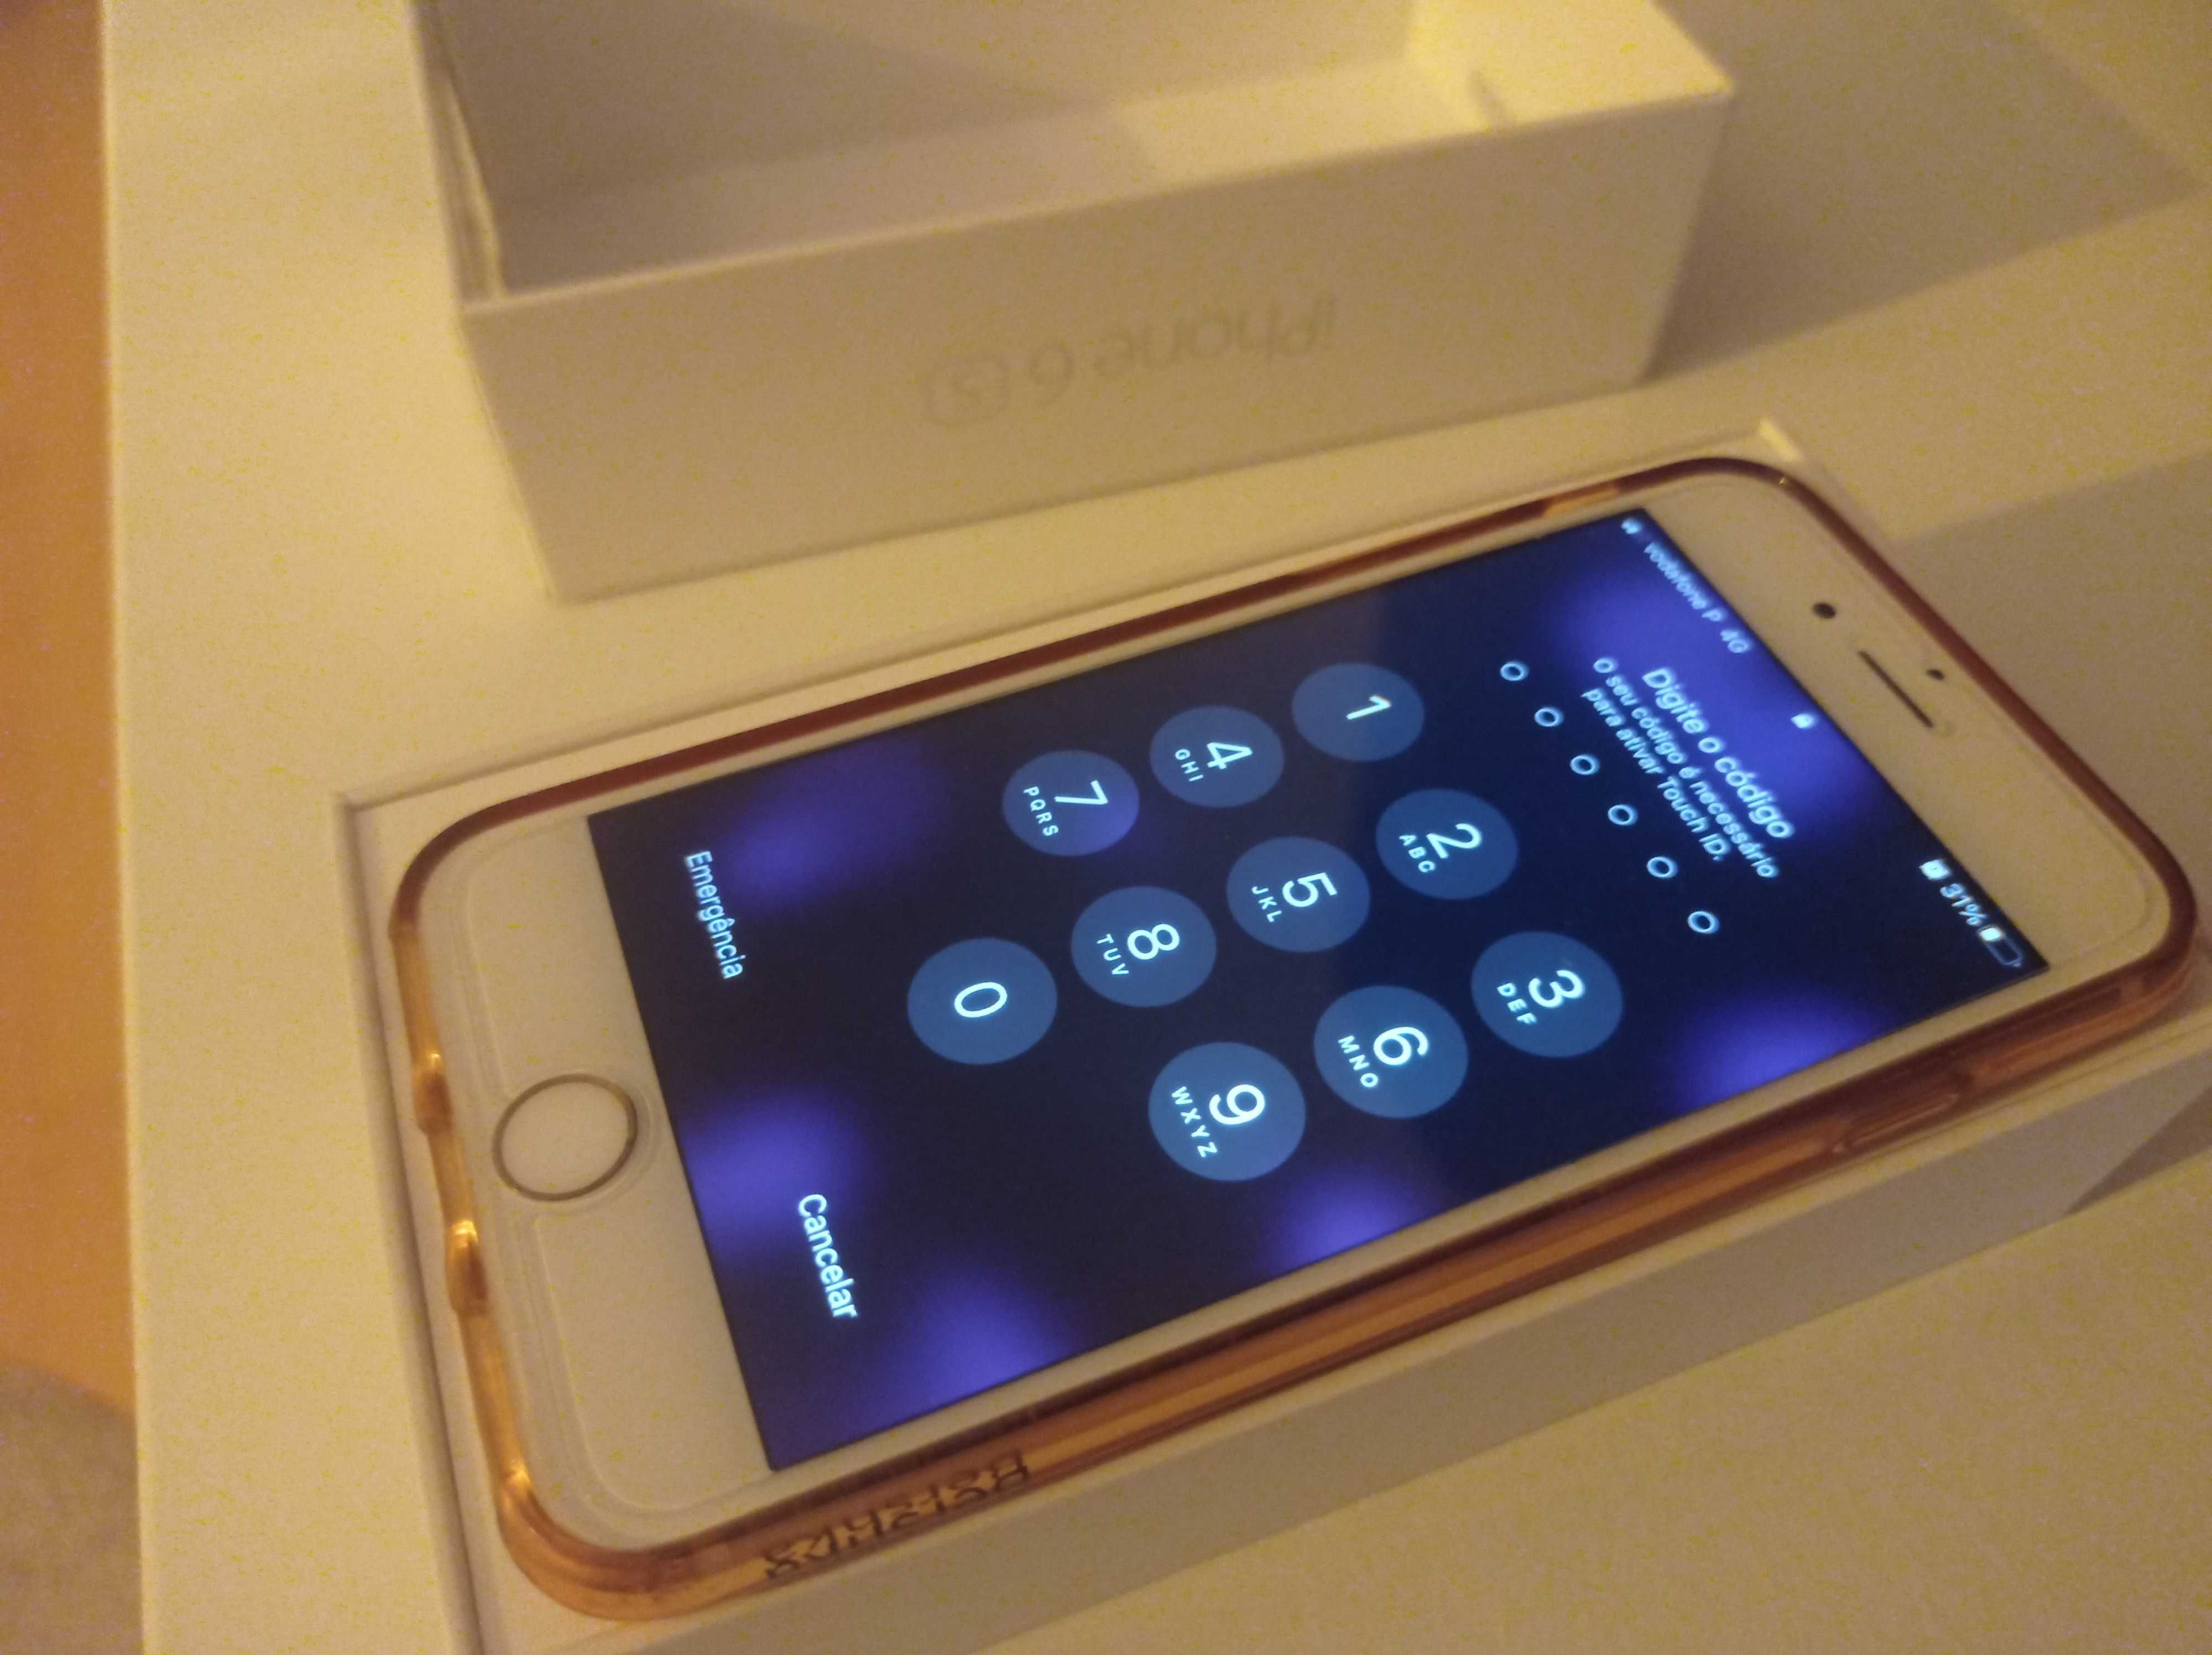 iPhone 6S 32 GB Rosa Gold desbloqueado em excelente estado